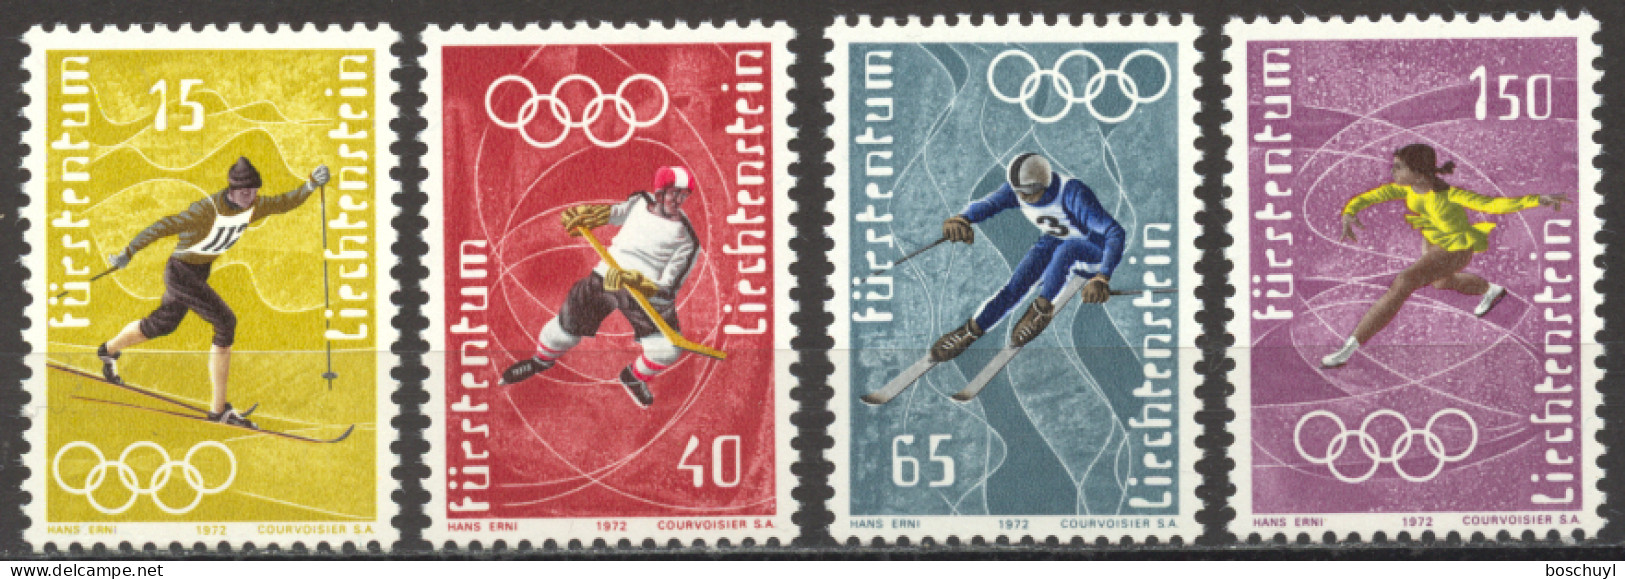 Liechtenstein, 1971, Olympic Winter Games Sapporo, Sports, MNH, Michel 551-554 - Nuevos